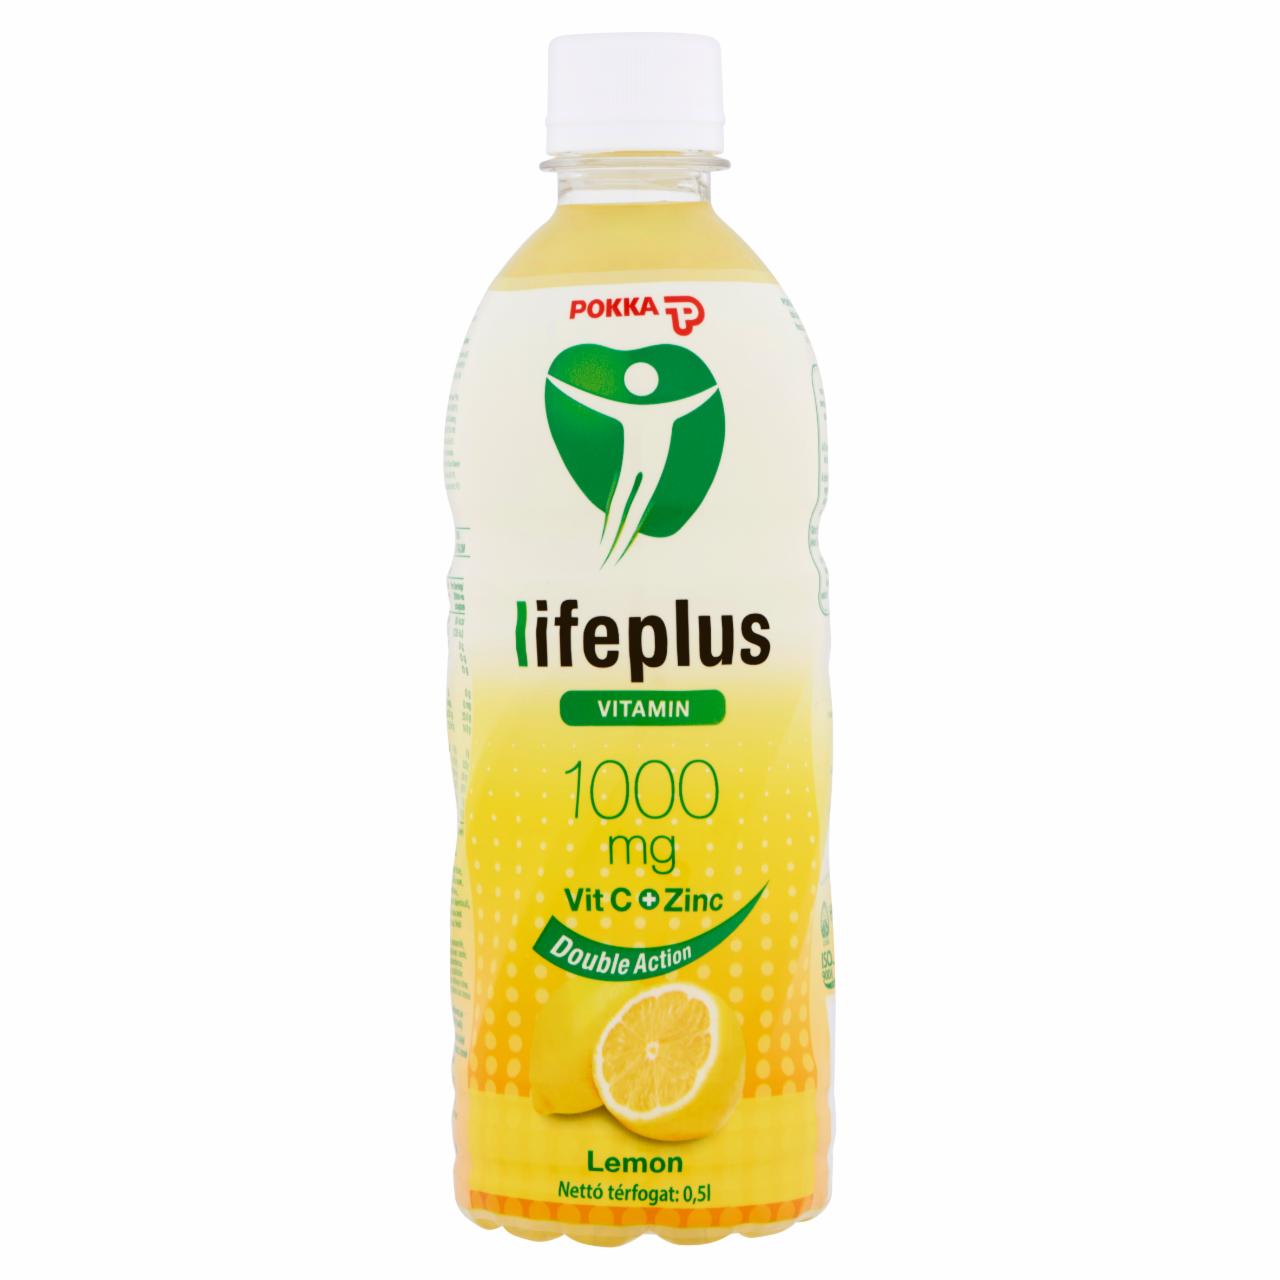 Képek - Pokka Lifeplus Lemon citrom ízű szénsavmentes üdítőital cukrokkal és édesítőszerrel 0,5 l